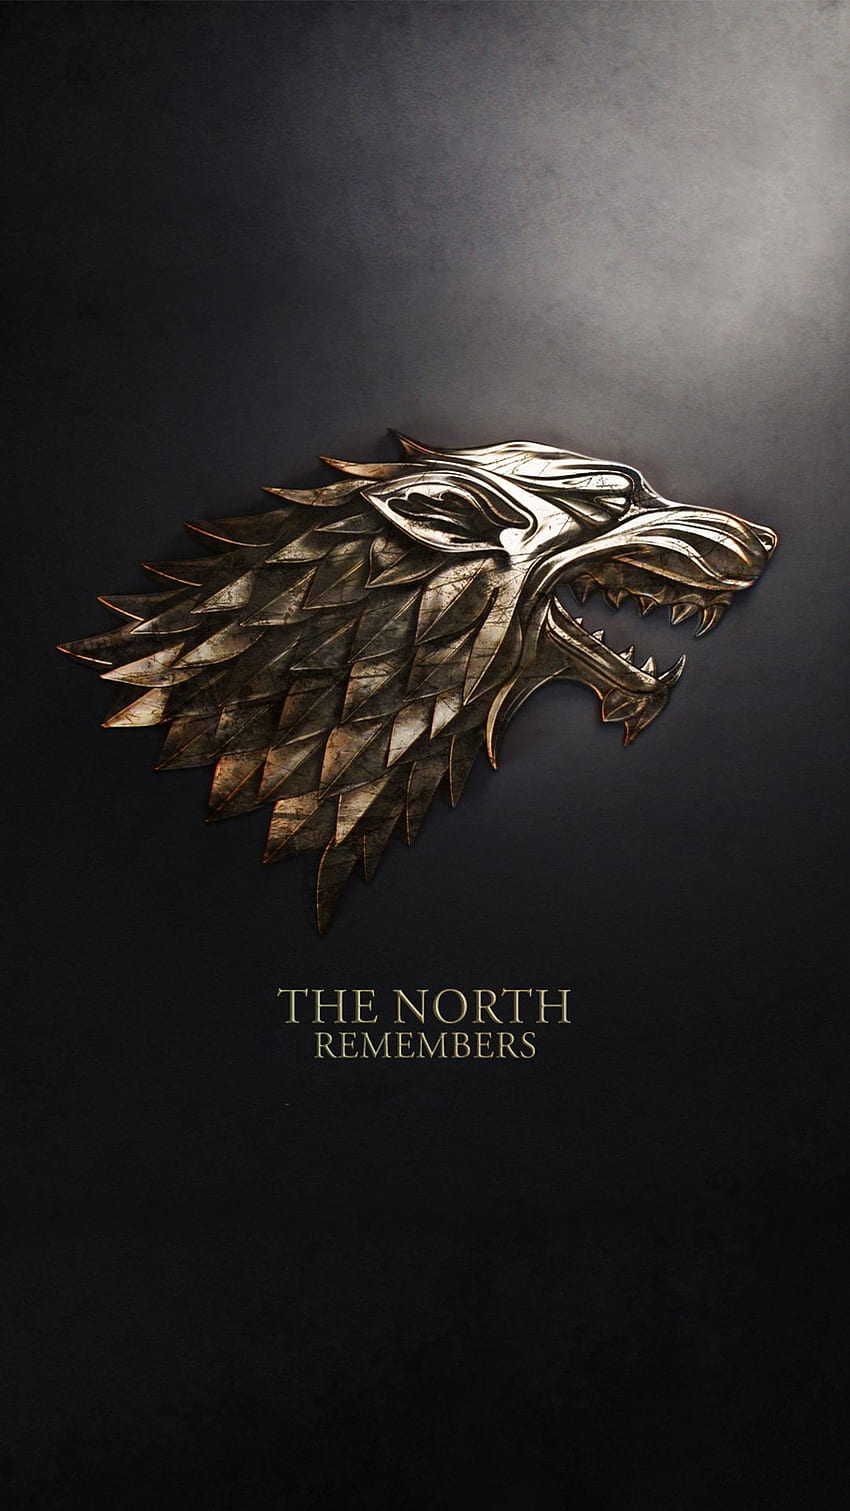 スターク ウルフ家の紋章 The North Remembers from Game of Thrones GoT phone iPh. ゲーム・オブ・スローンズ、ゲーム・オブ・スローンズのポスター、ゲーム・オブ・スローンズのアートワークを手に入れた HD電話の壁紙